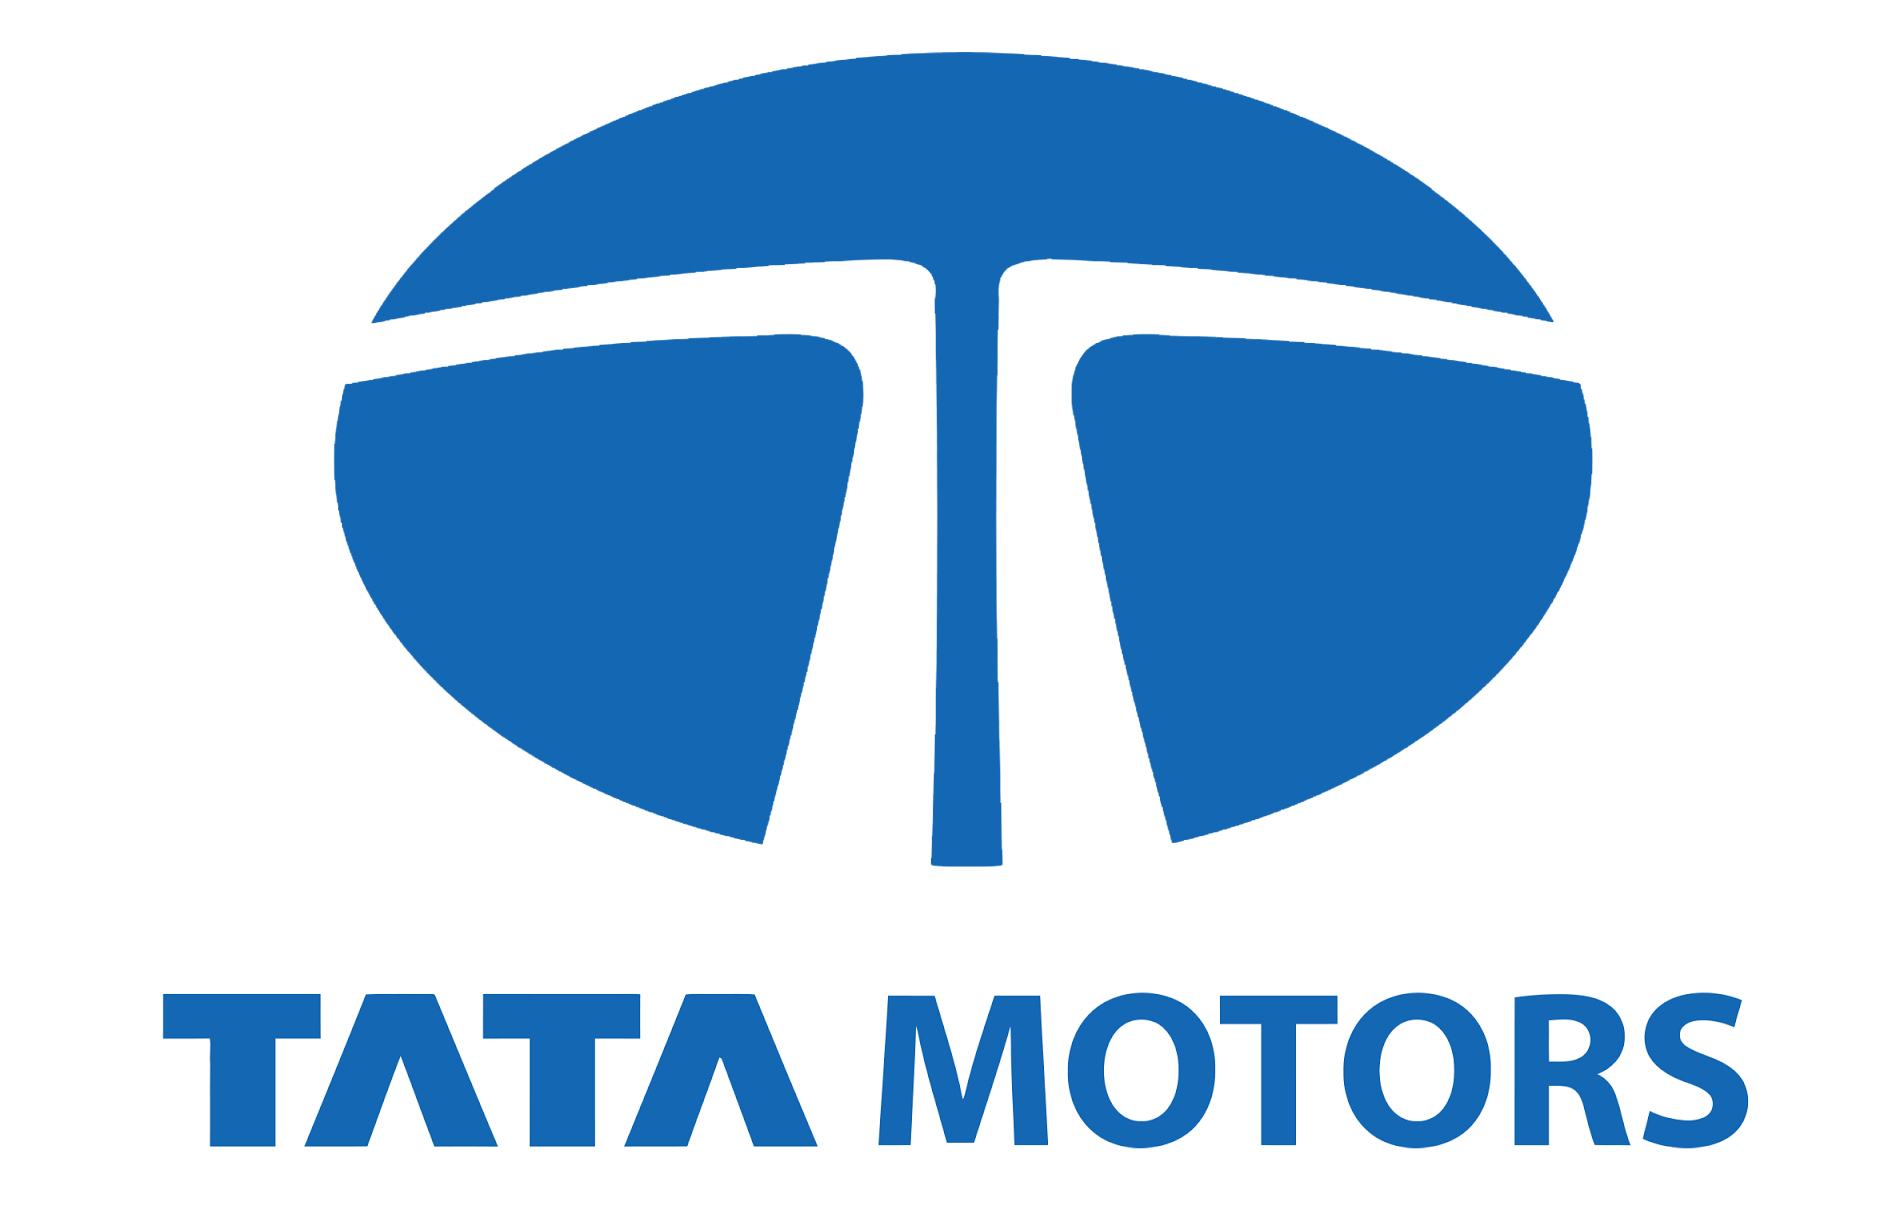 Tata Motors Cars Showroom - Rajarshi Tata|Show Room|Automotive